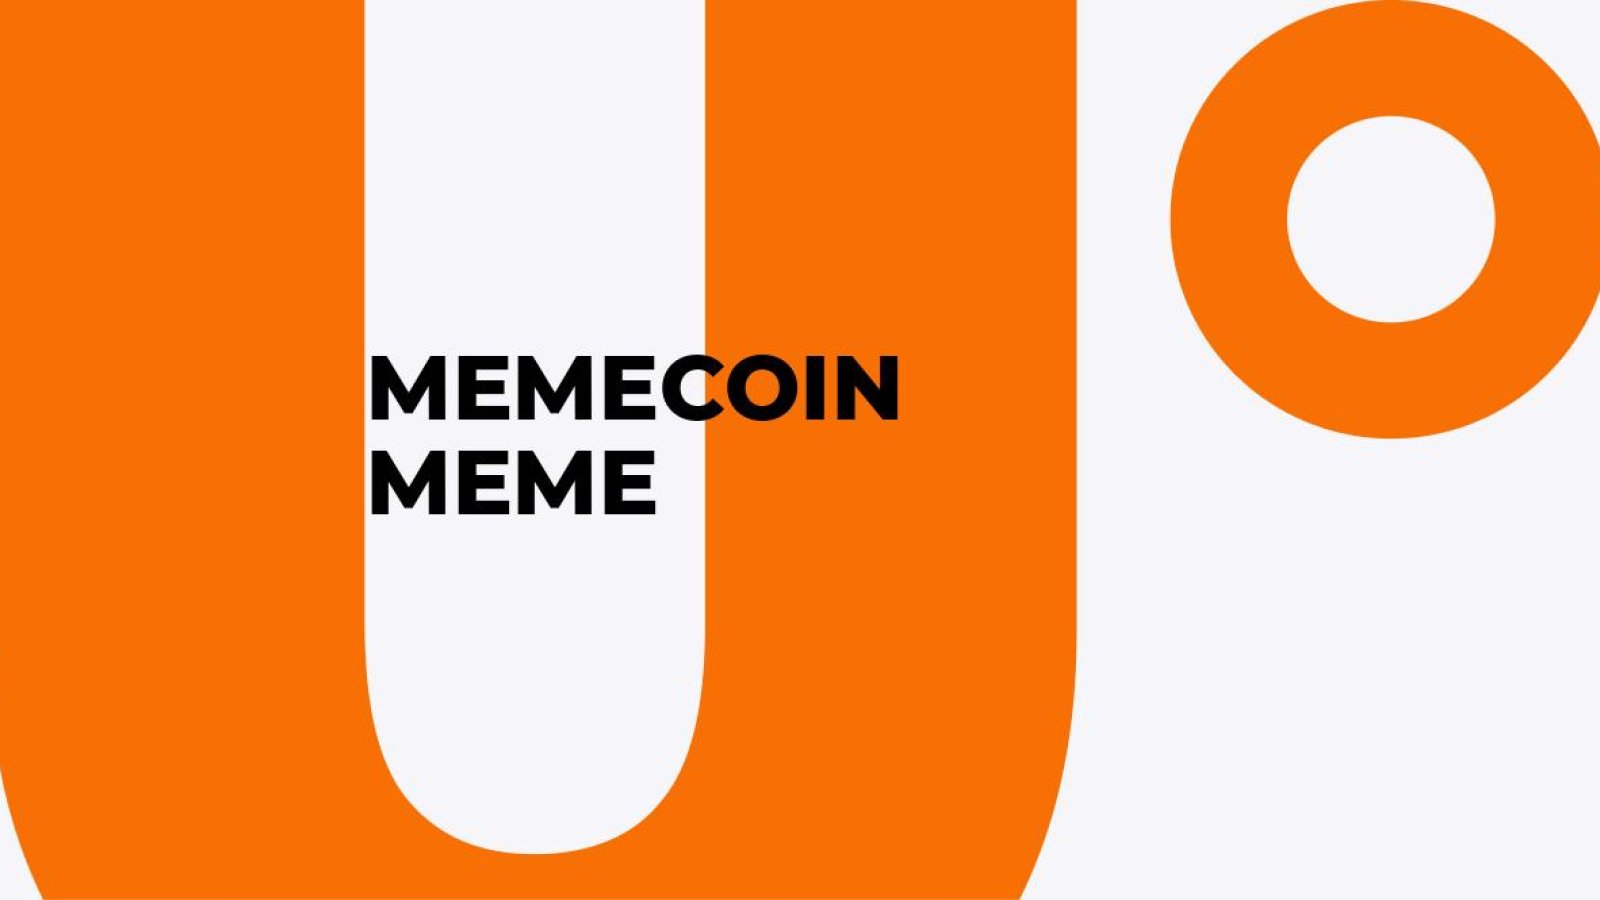 Memecoin MEME